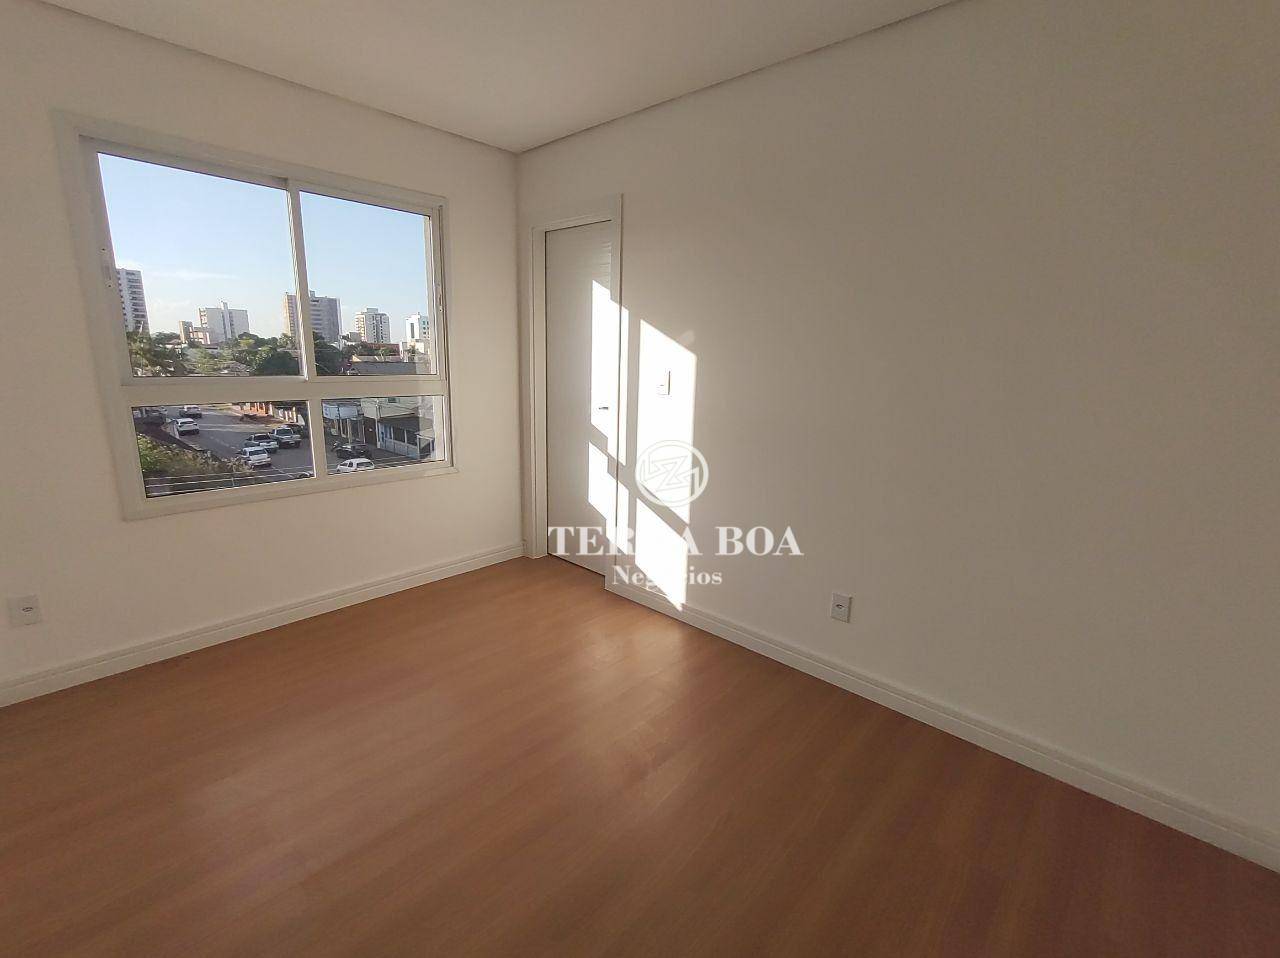 Apartamento, 3 quartos, 108 m² - Foto 3